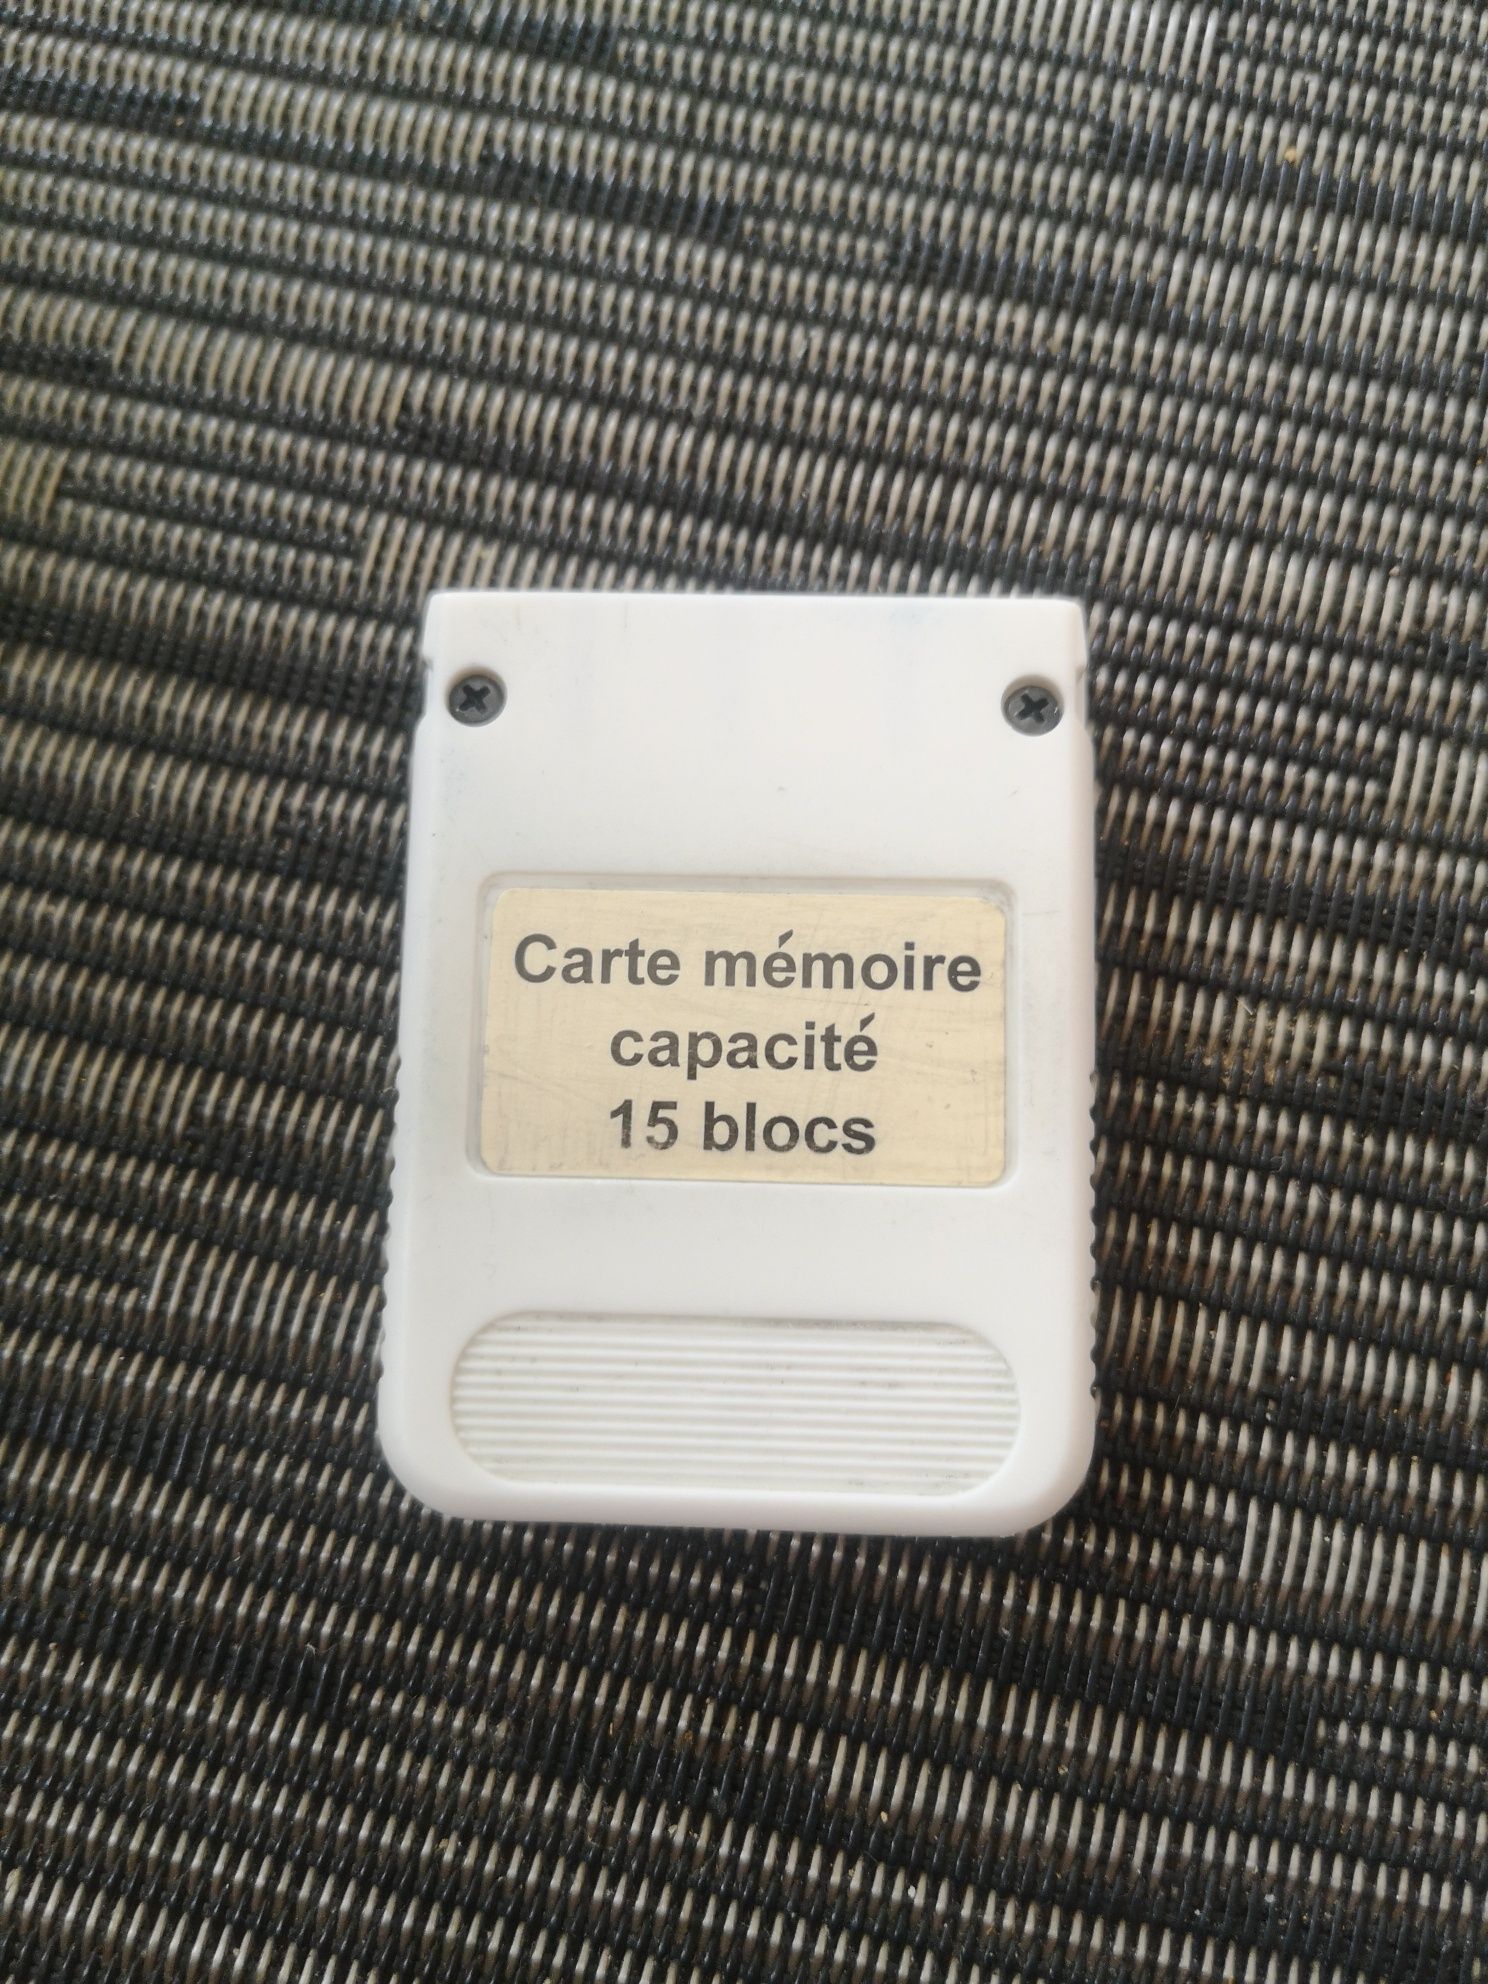 Karta pamięci PS 1, 15 bloków